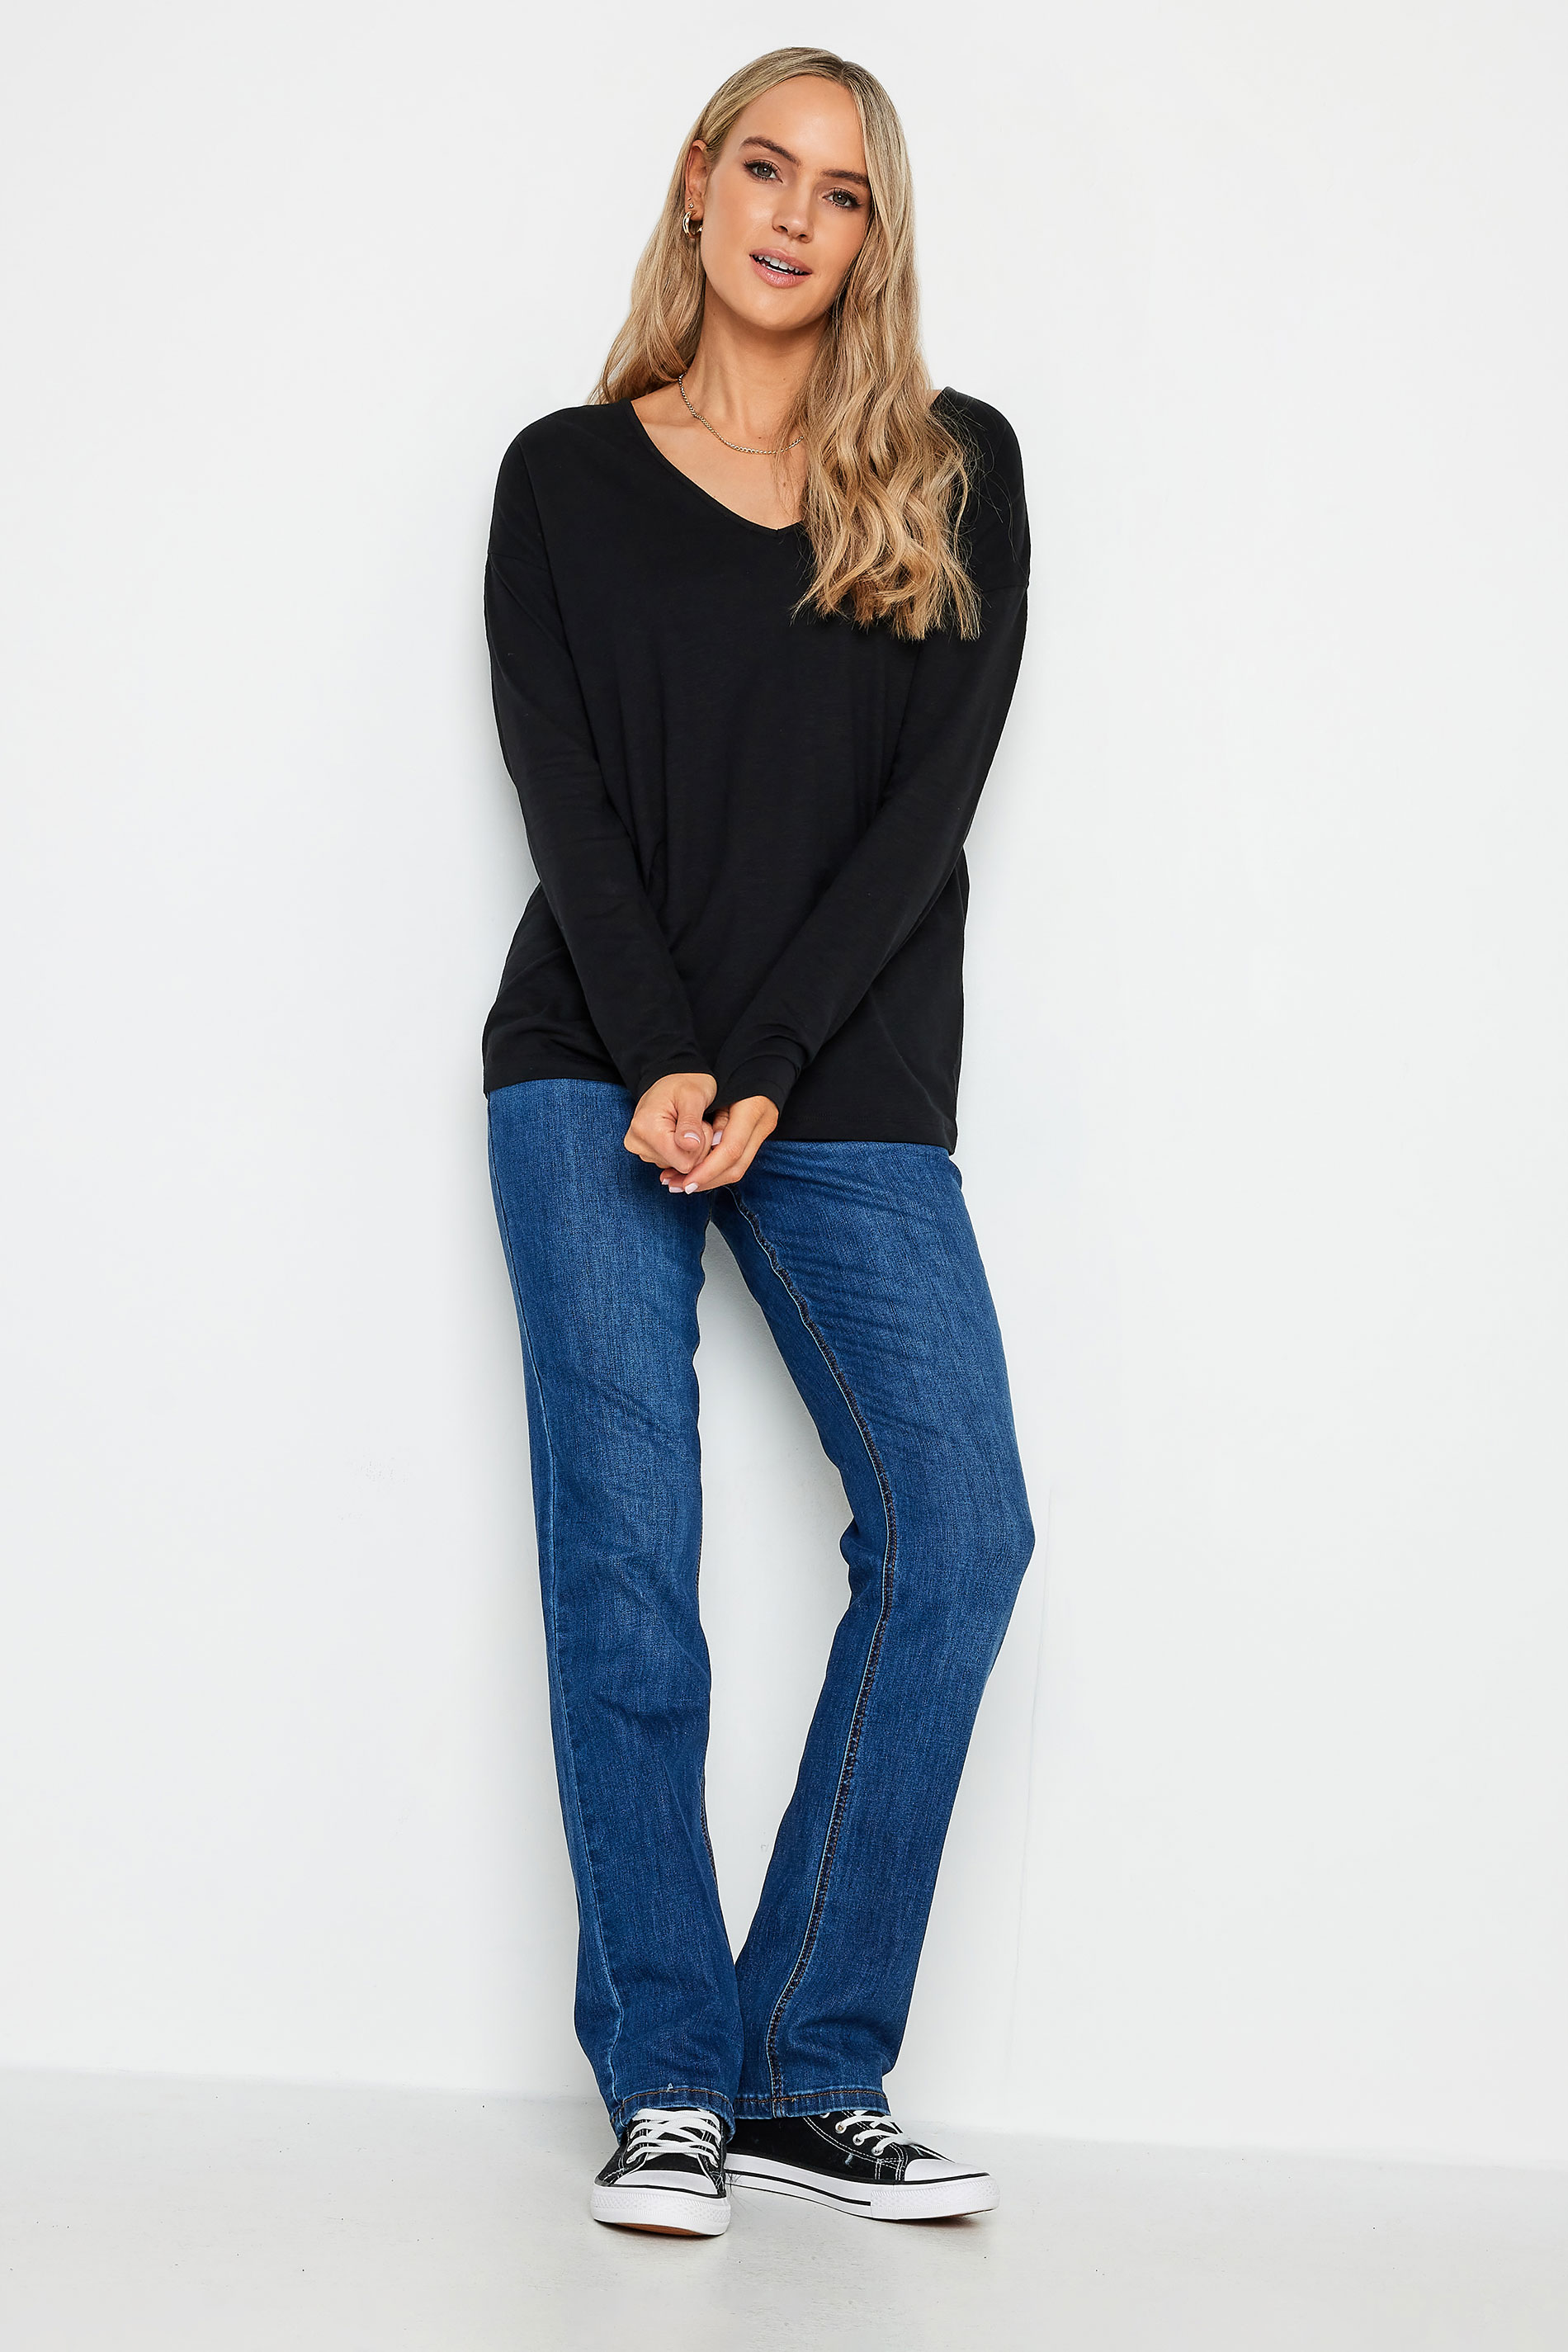 LTS Tall Light Grey & Black V-Neck Long Sleeve Cotton T-Shirt | Long Tall Sally 3